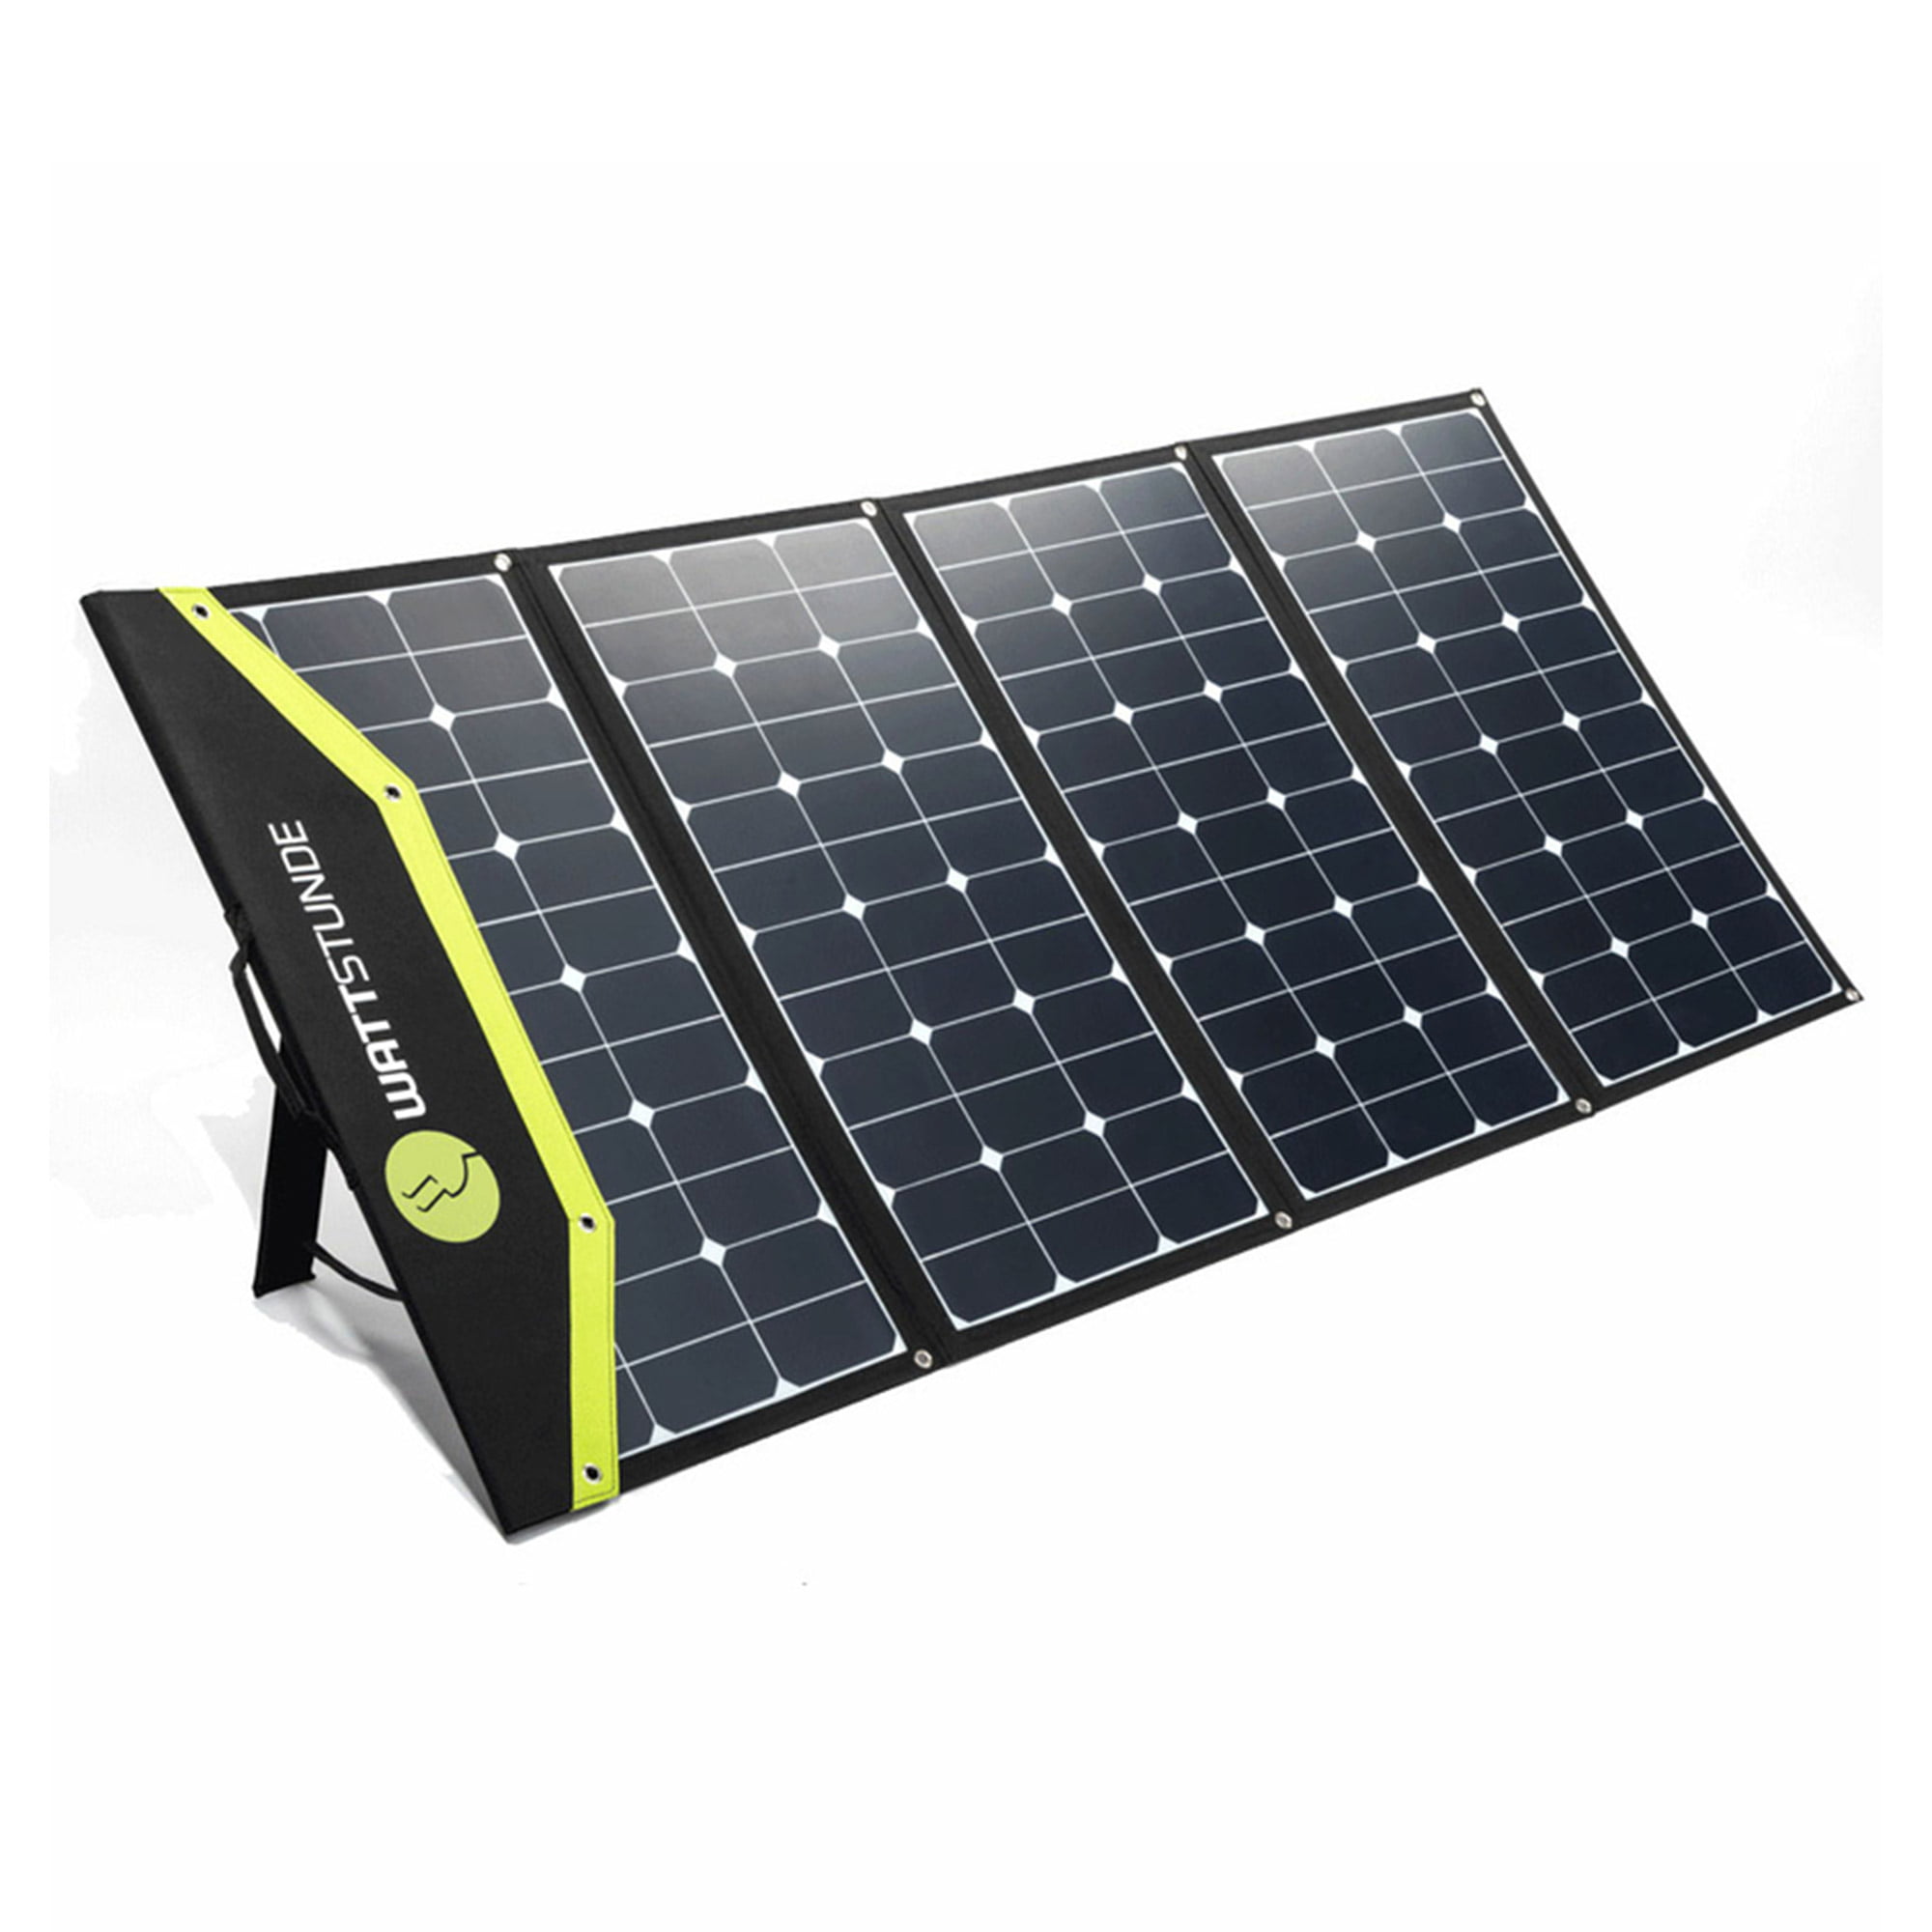 WATTSTUNDE WS340SF SunFolder+ 340Wp Solartasche, WATTSTUNDE, Brands